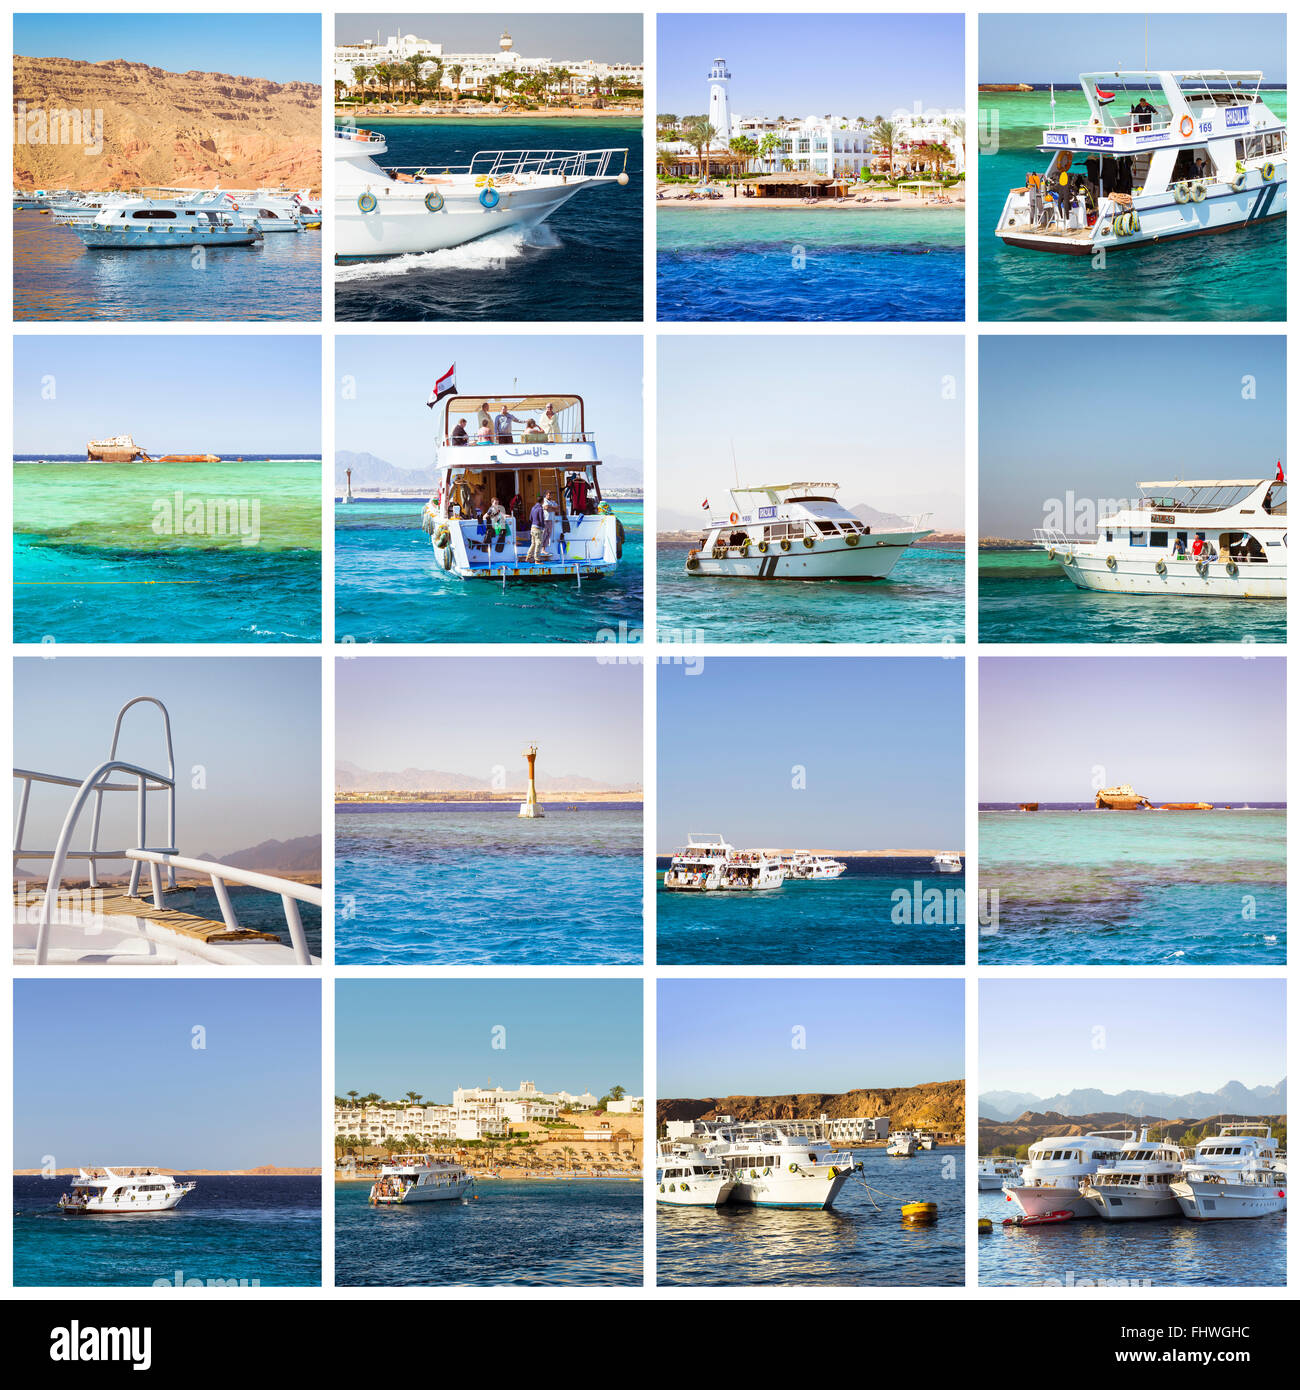 SHARM EL SHEIKH, Egitto - 25 febbraio 2014: collage con immagini di turista gite in barca. Sunny crociera sul Mar Rosso su bianco yacht Foto Stock